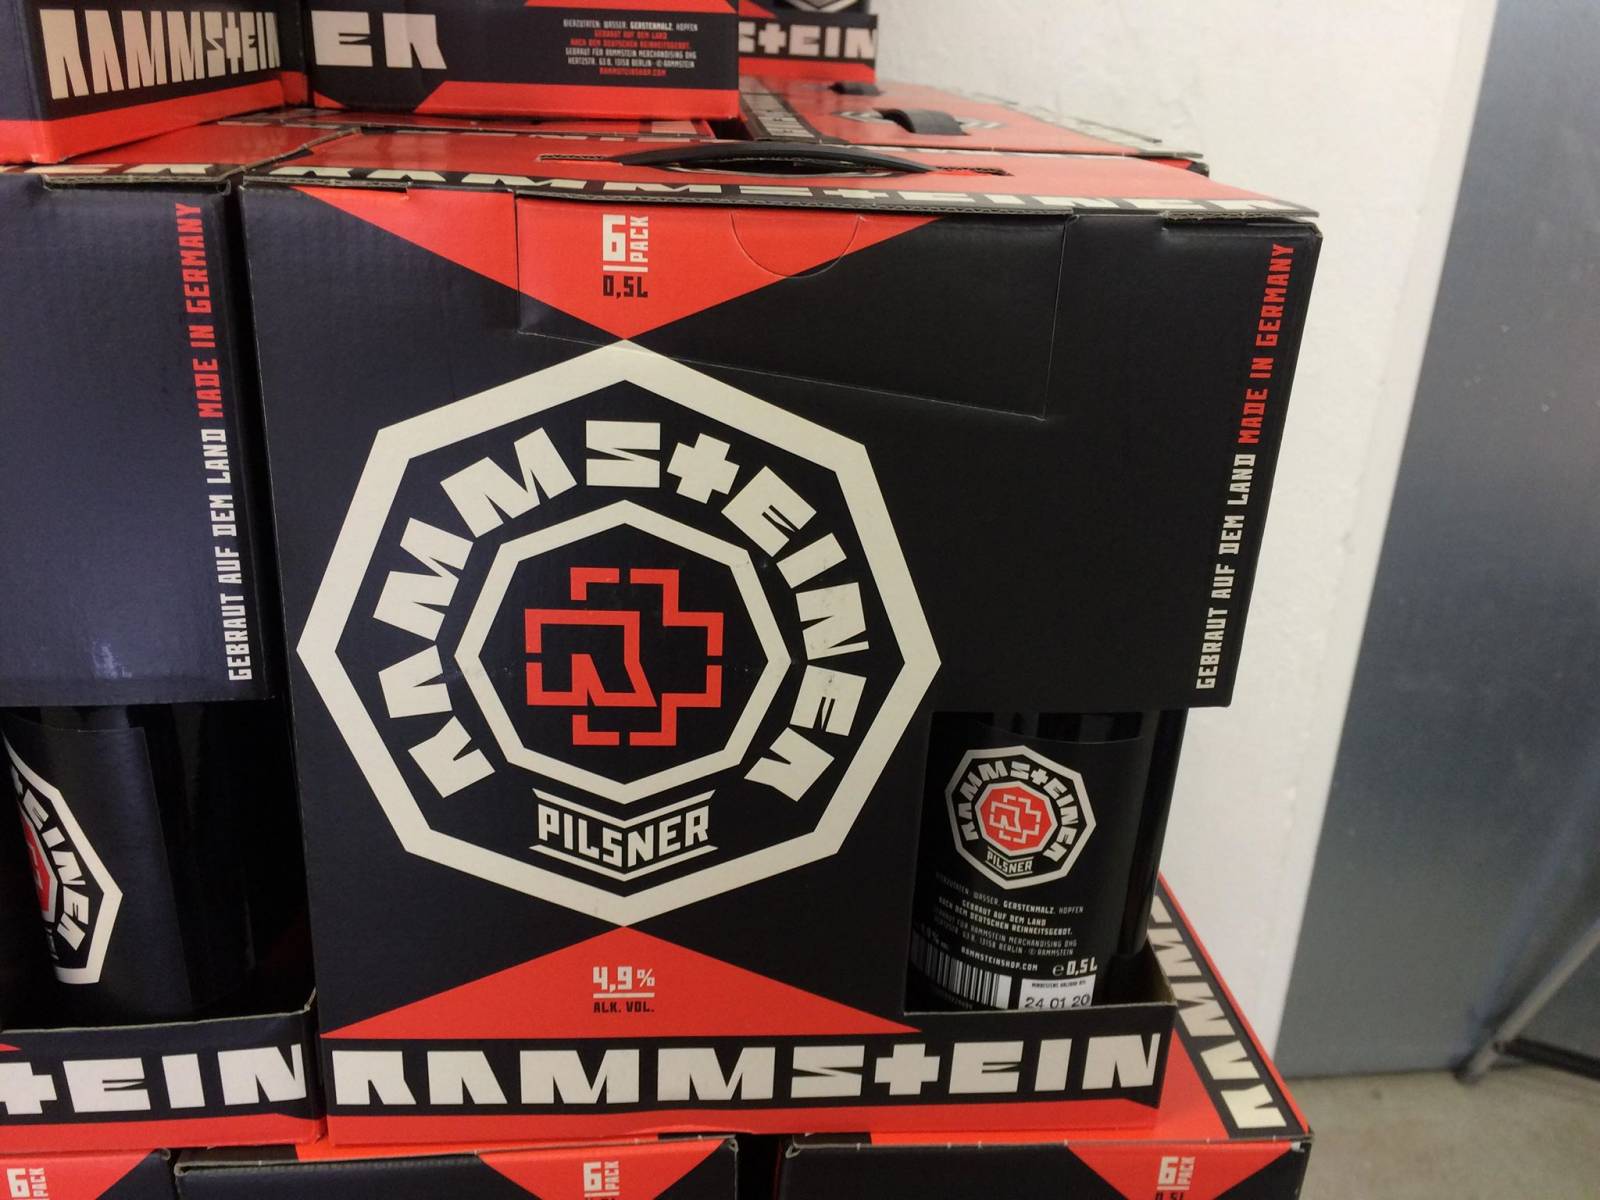 V Praze se objevil obchod a výstava Rammstein - jen na tři dny. Podívejte se, co tam uvidíte